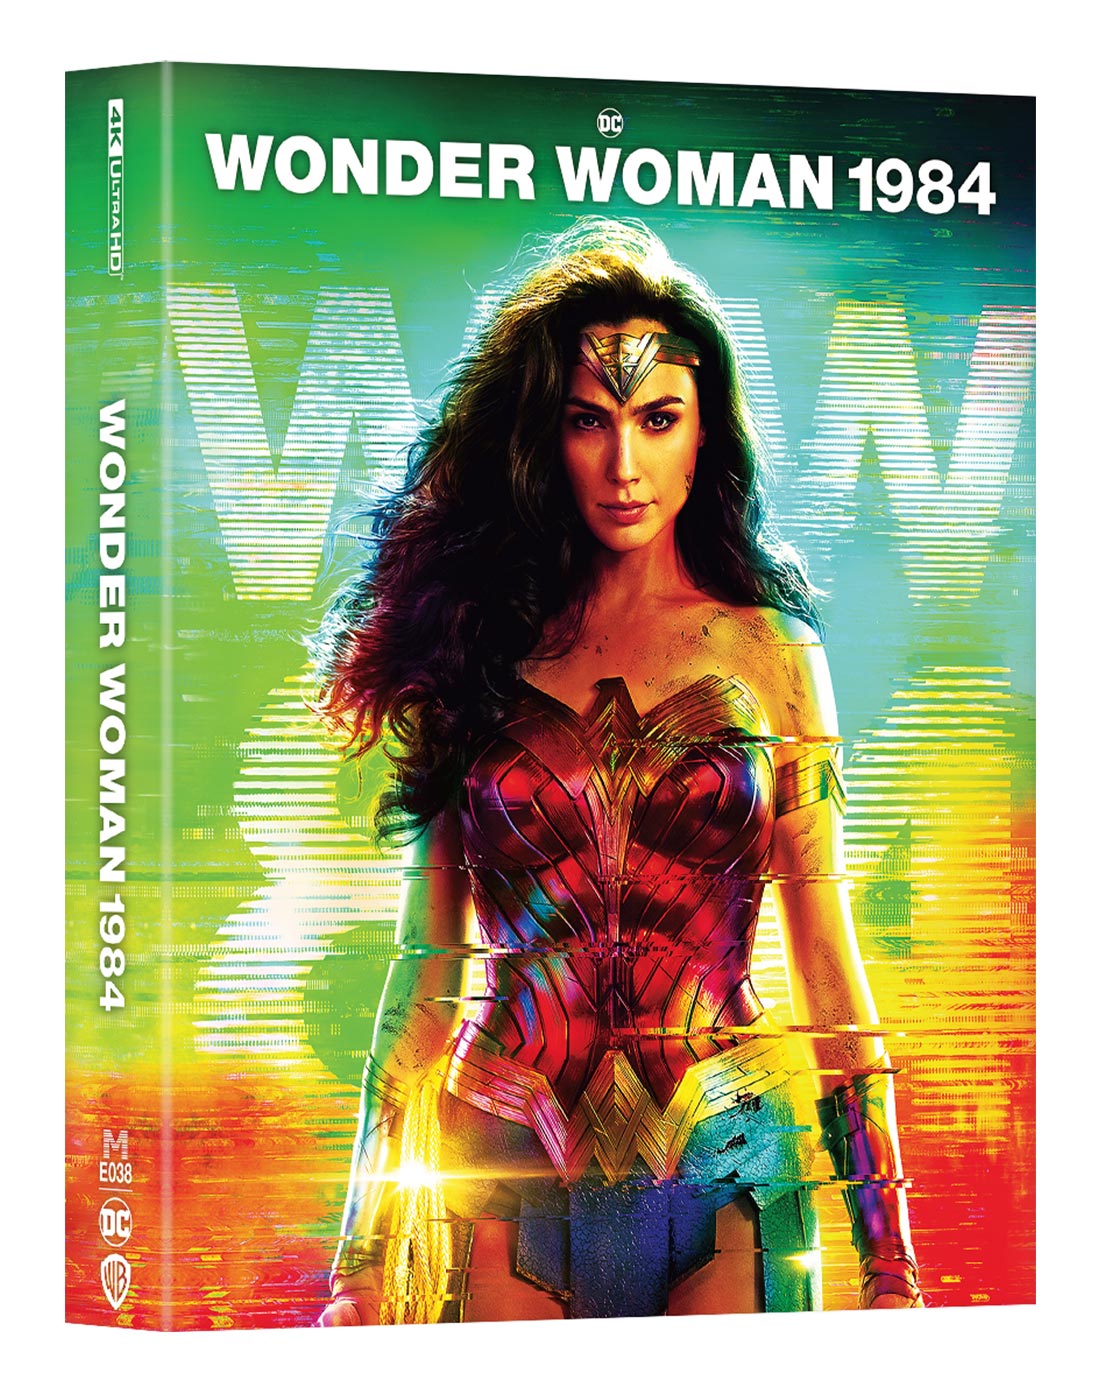 [ME#38] Wonder Woman 1984 Steelbook (Full Slip)